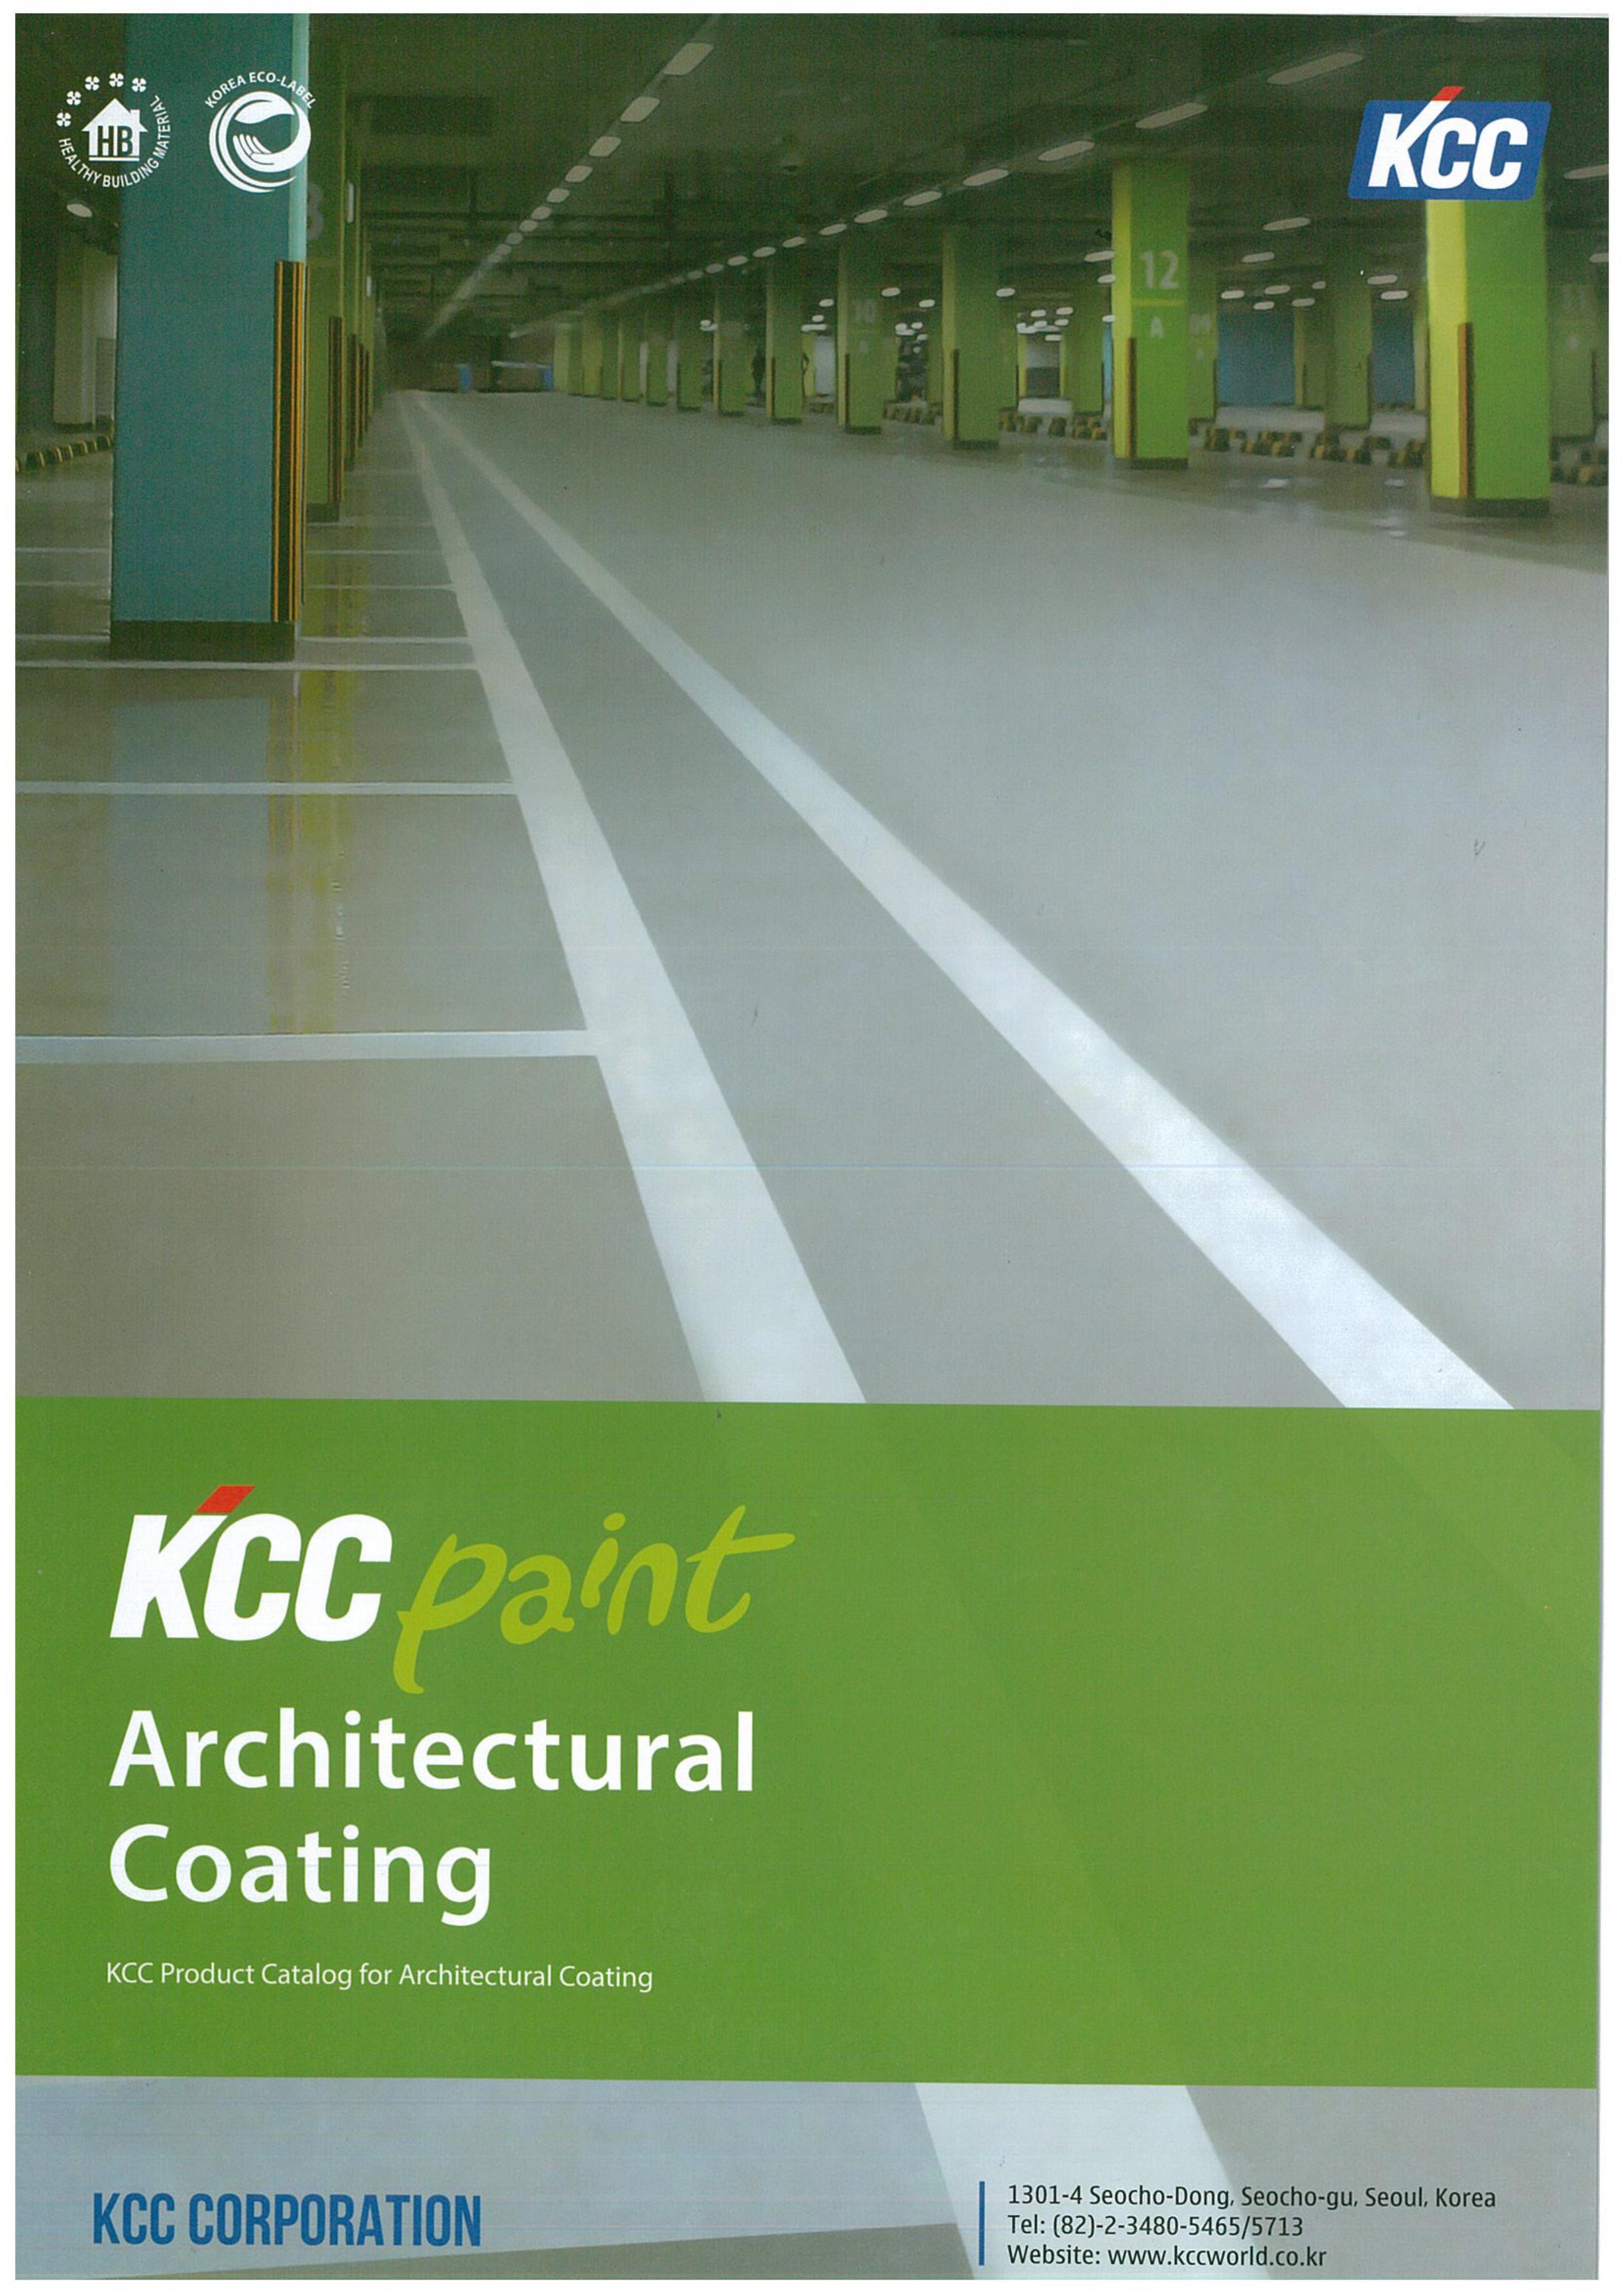 Bảng màu sơn KCC: Với bảng màu sơn KCC, bạn có thể tìm thấy những màu sơn mà bạn sẽ không tìm thấy ở bất kỳ nơi nào khác. Đa dạng màu sắc và kiểu dáng, giúp bạn tạo nên những công trình độc đáo và ấn tượng.